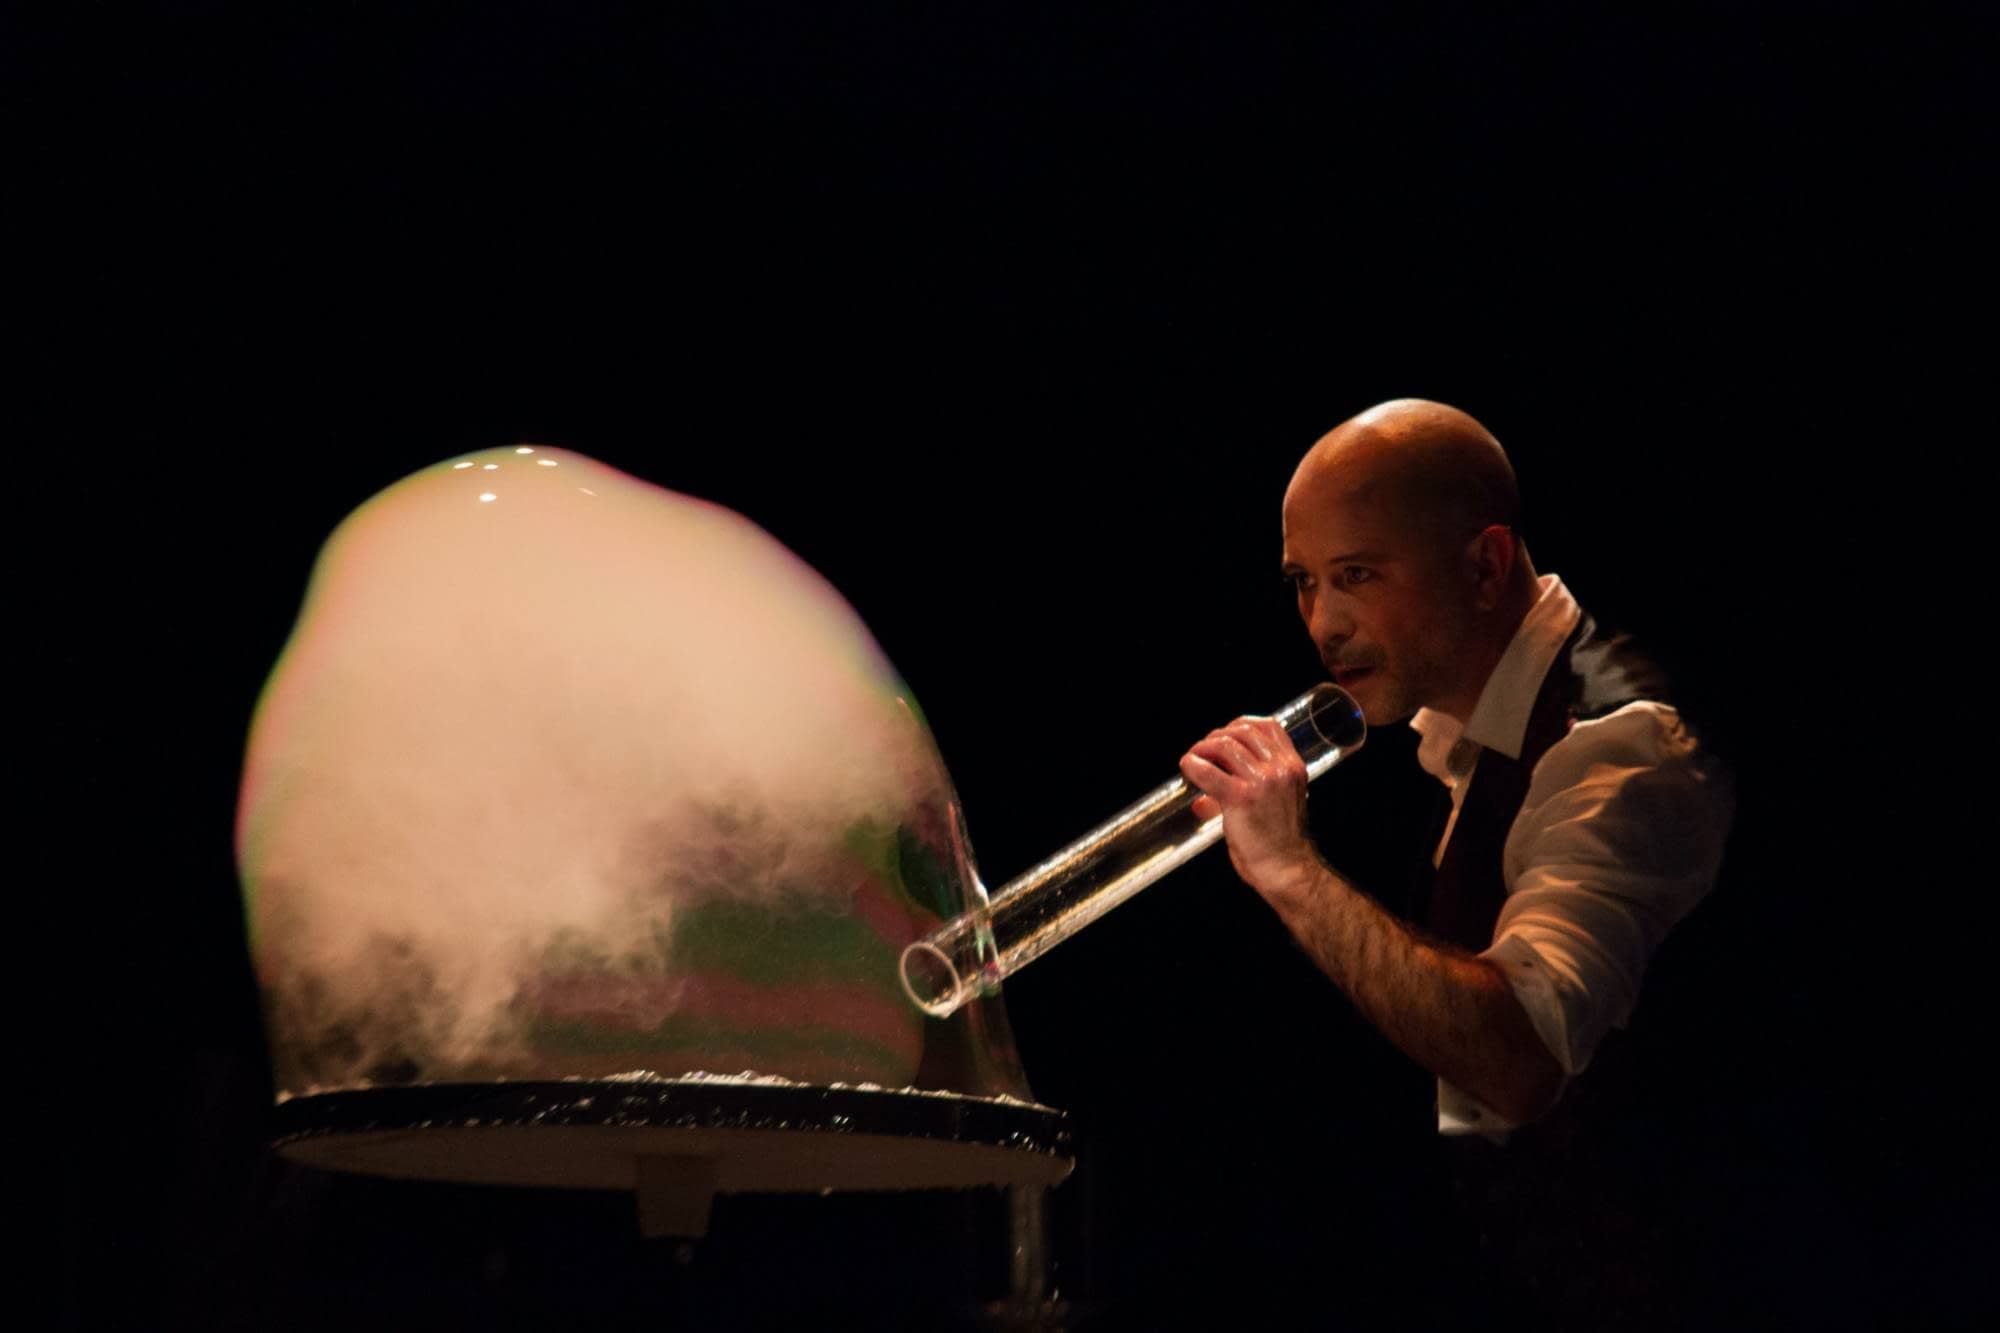 Bubble Show de Andrés KO, el mago de las burbujas, en una imagen de archivo. FACEBOOK